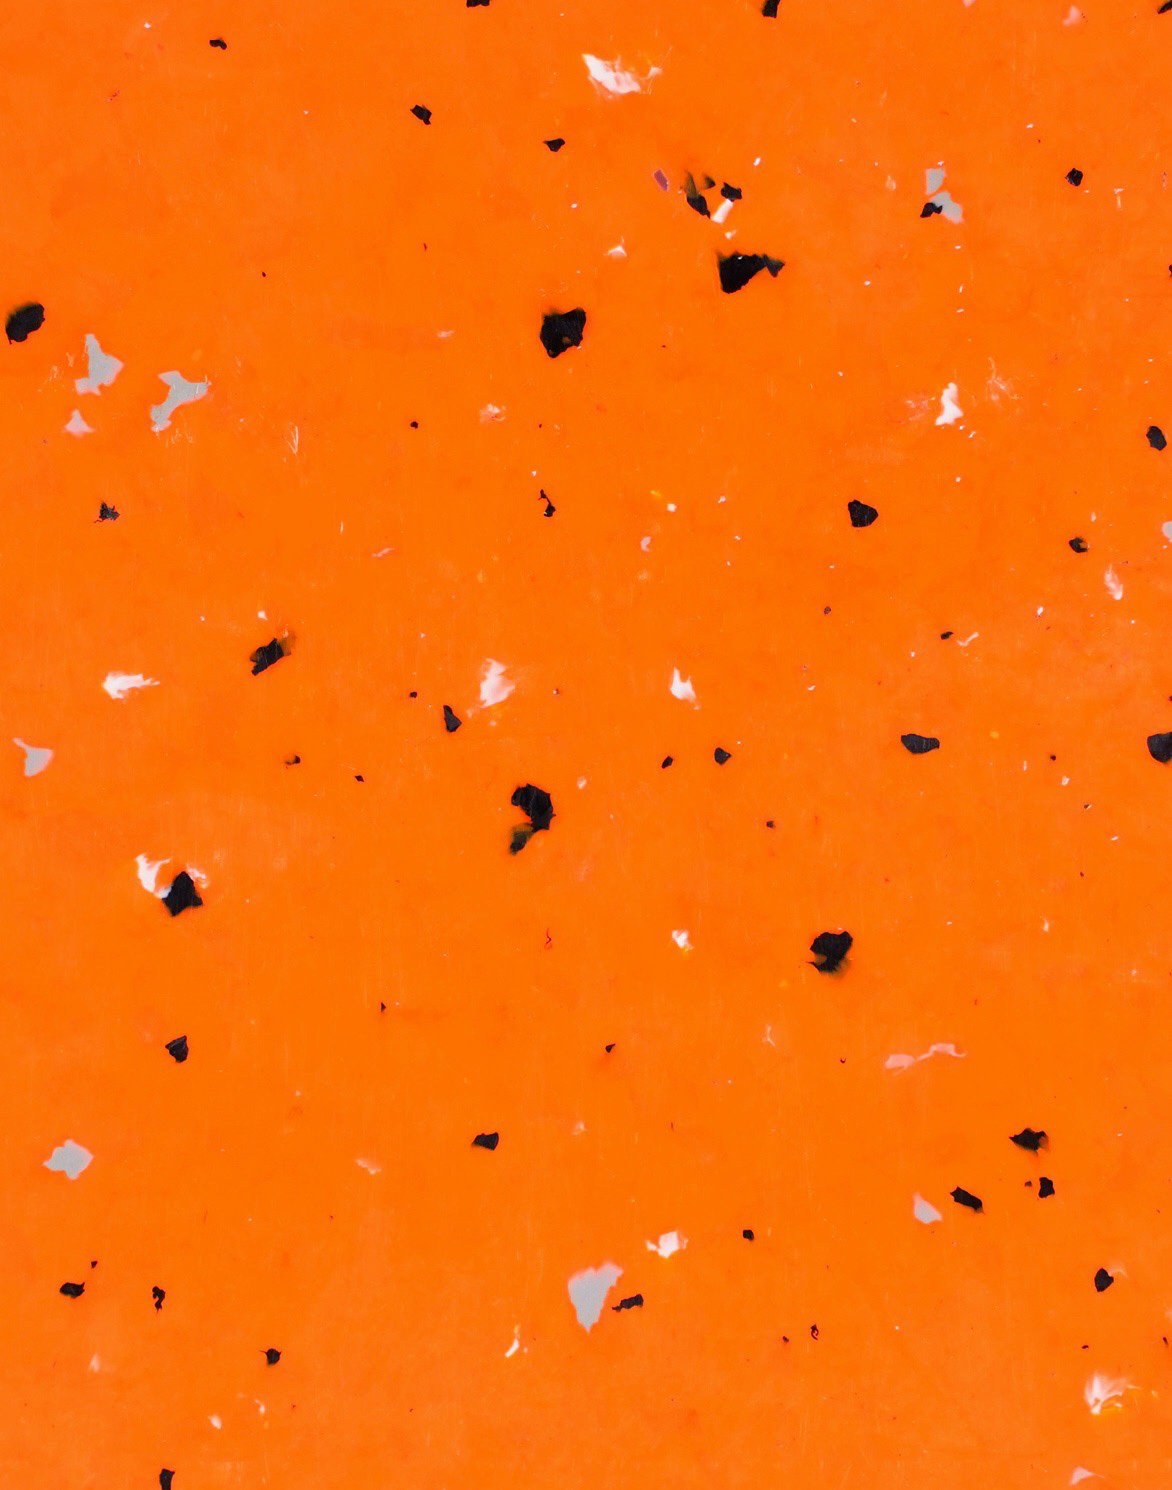 granité orange avec morceaux noirs en moyenne quantité, quelques gris et quelques blancs